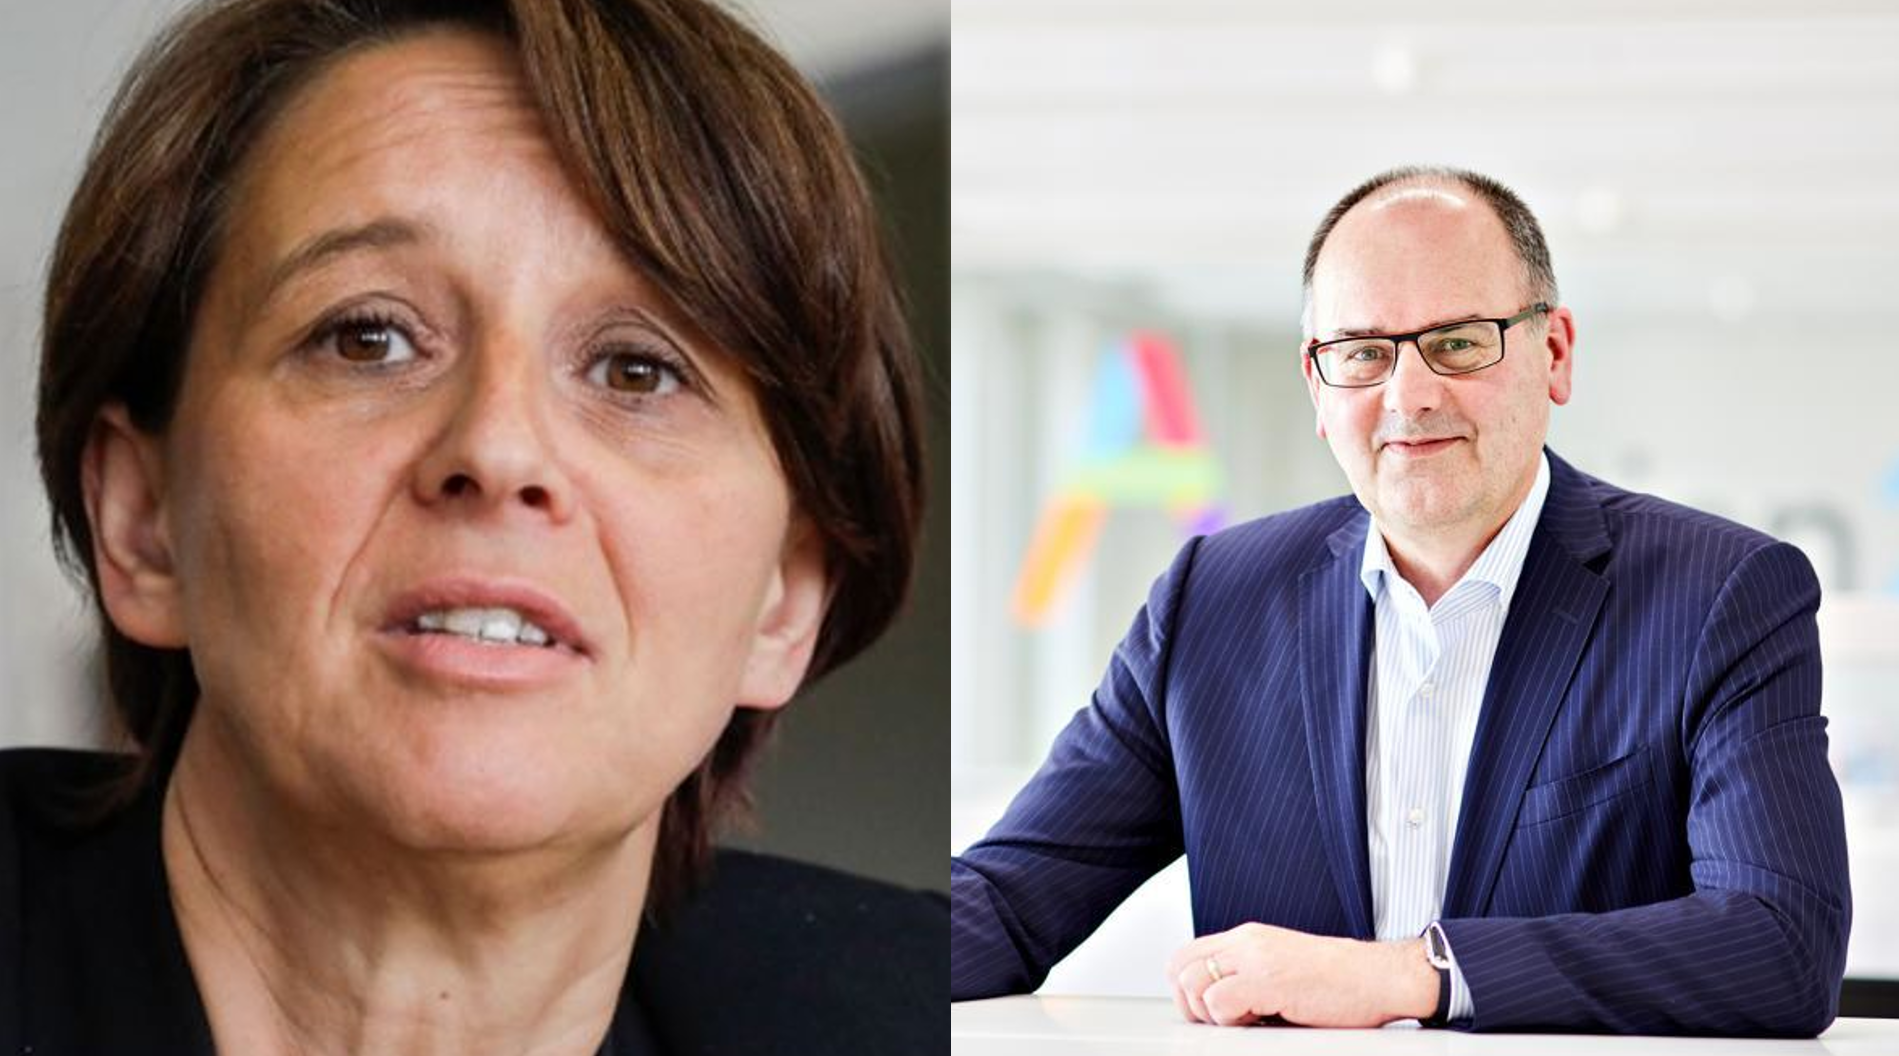 Raad van Bestuur Pro League verwelkomt onafhankelijke bestuurders Bart De Smet en Isabelle Mazzara